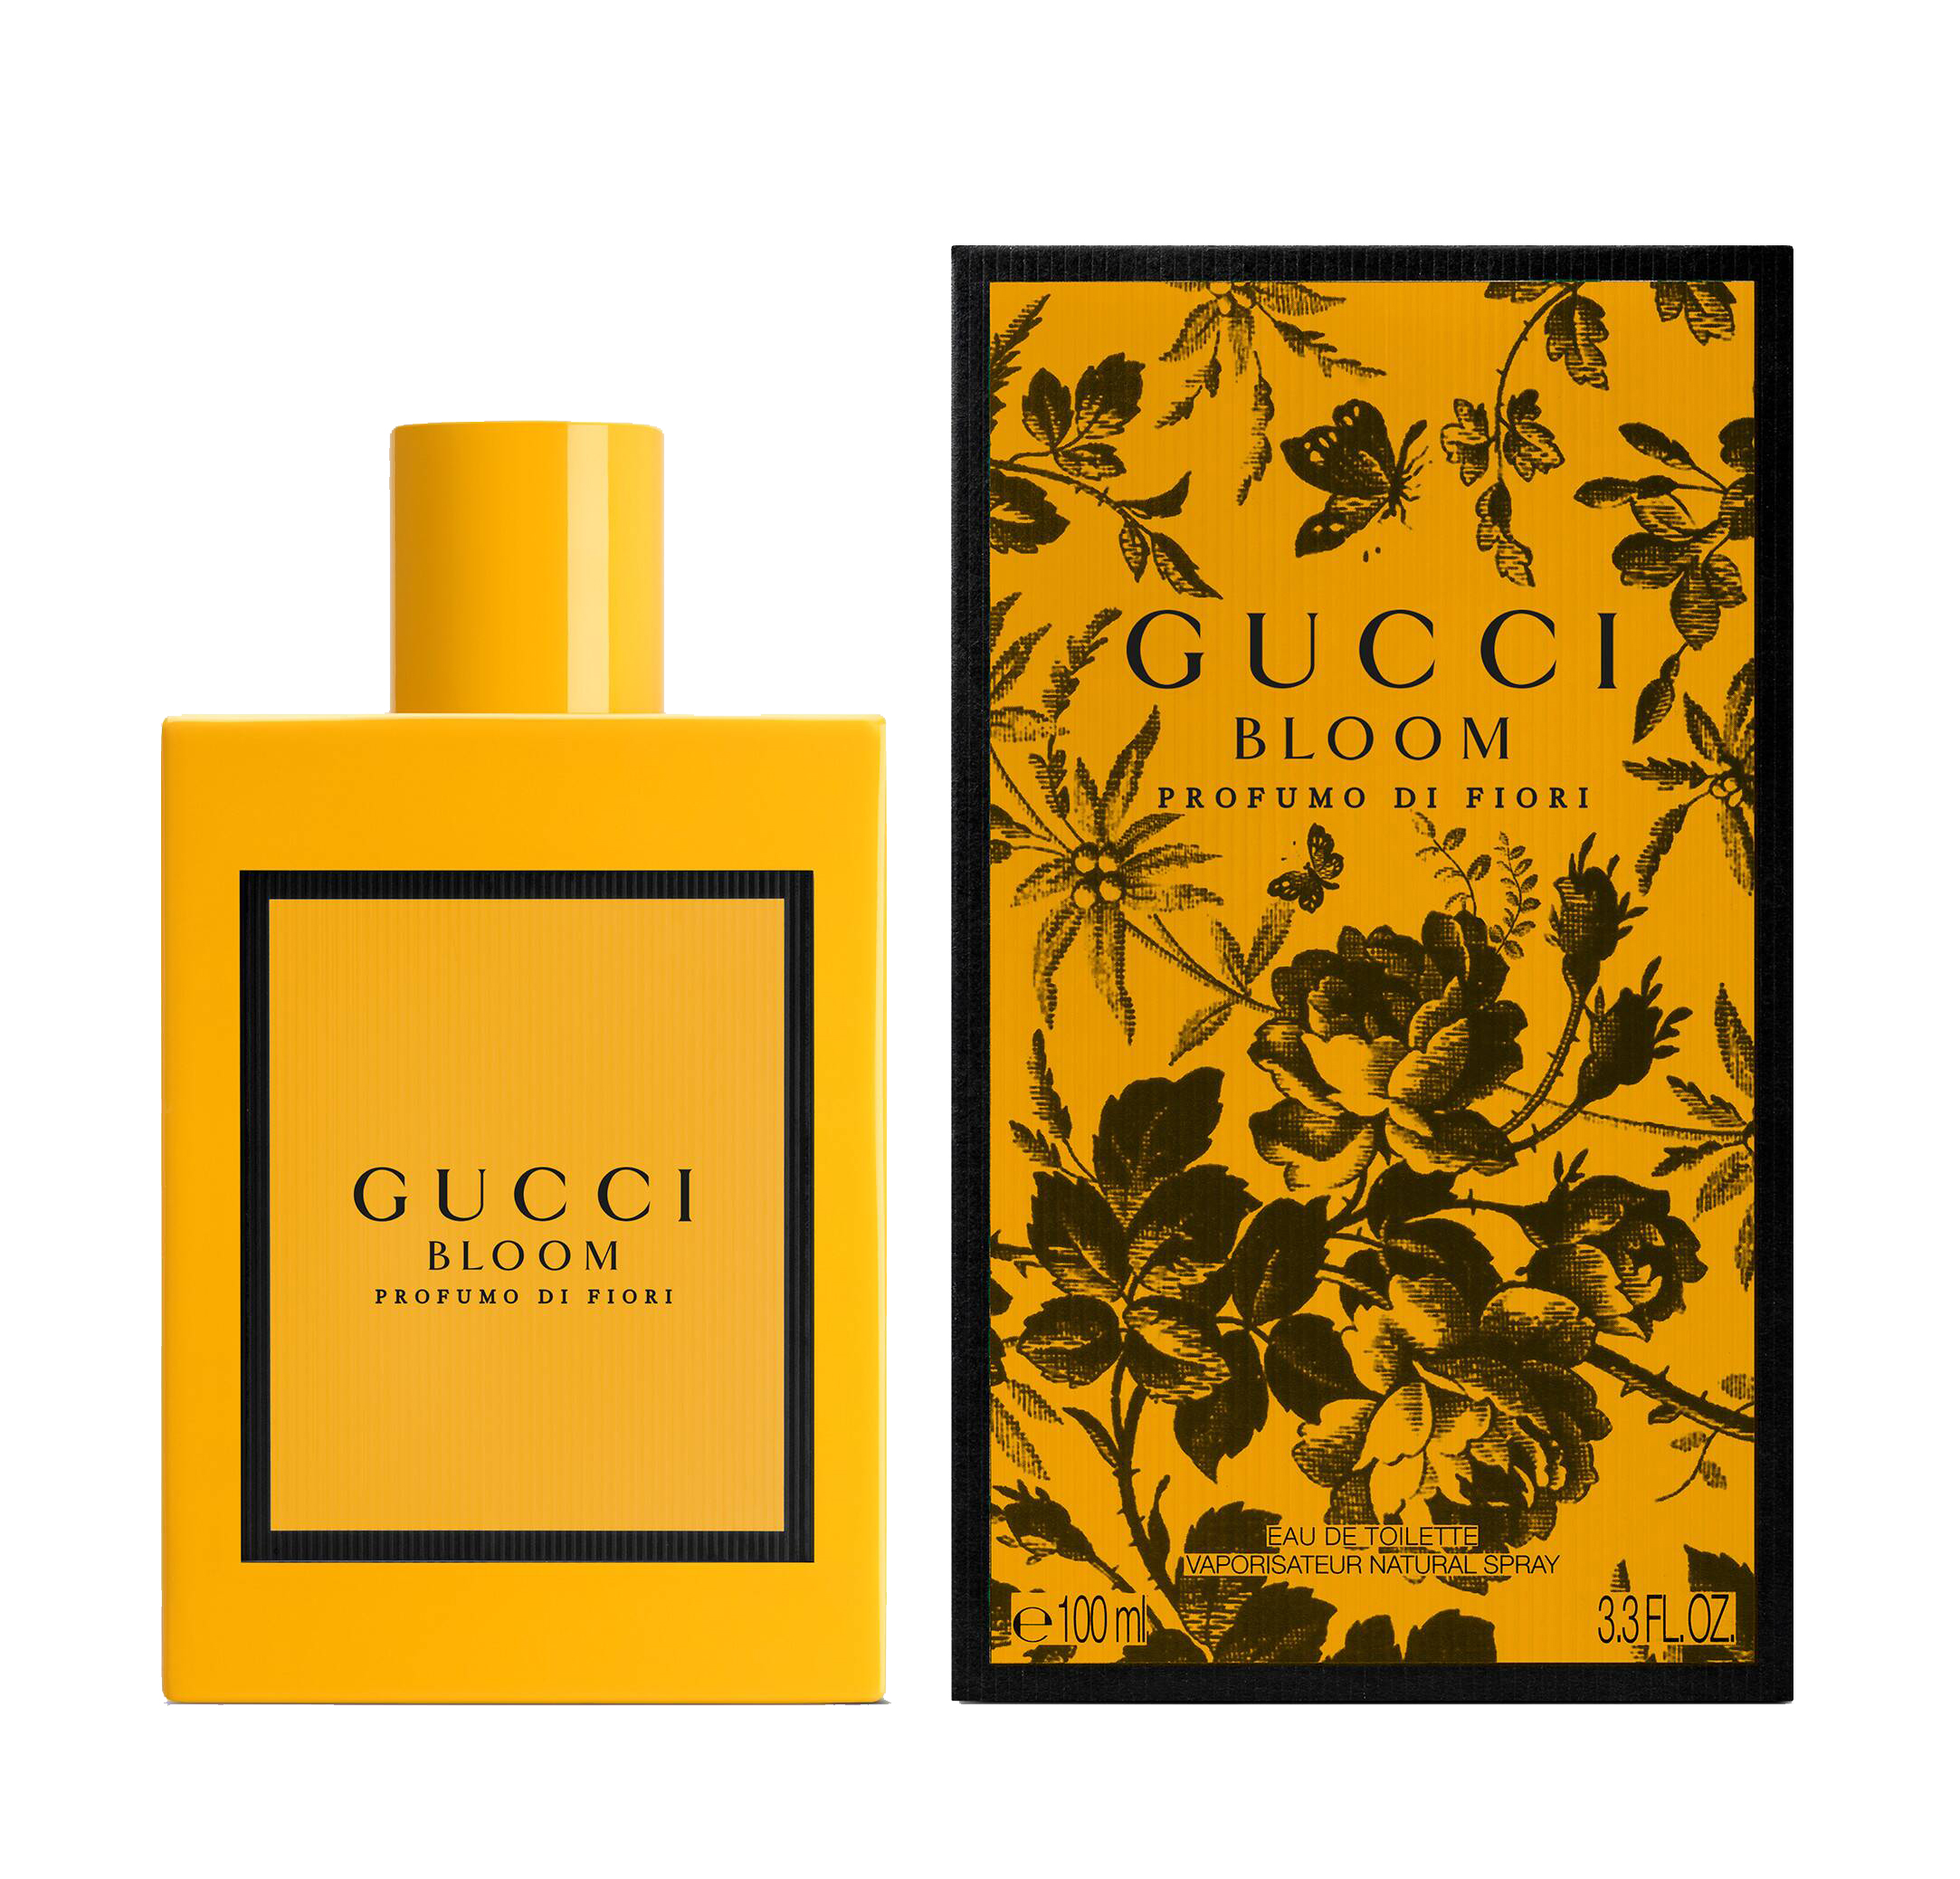 Gucci Bloom Profumo di Fiori ~ Parfumeria de nisa